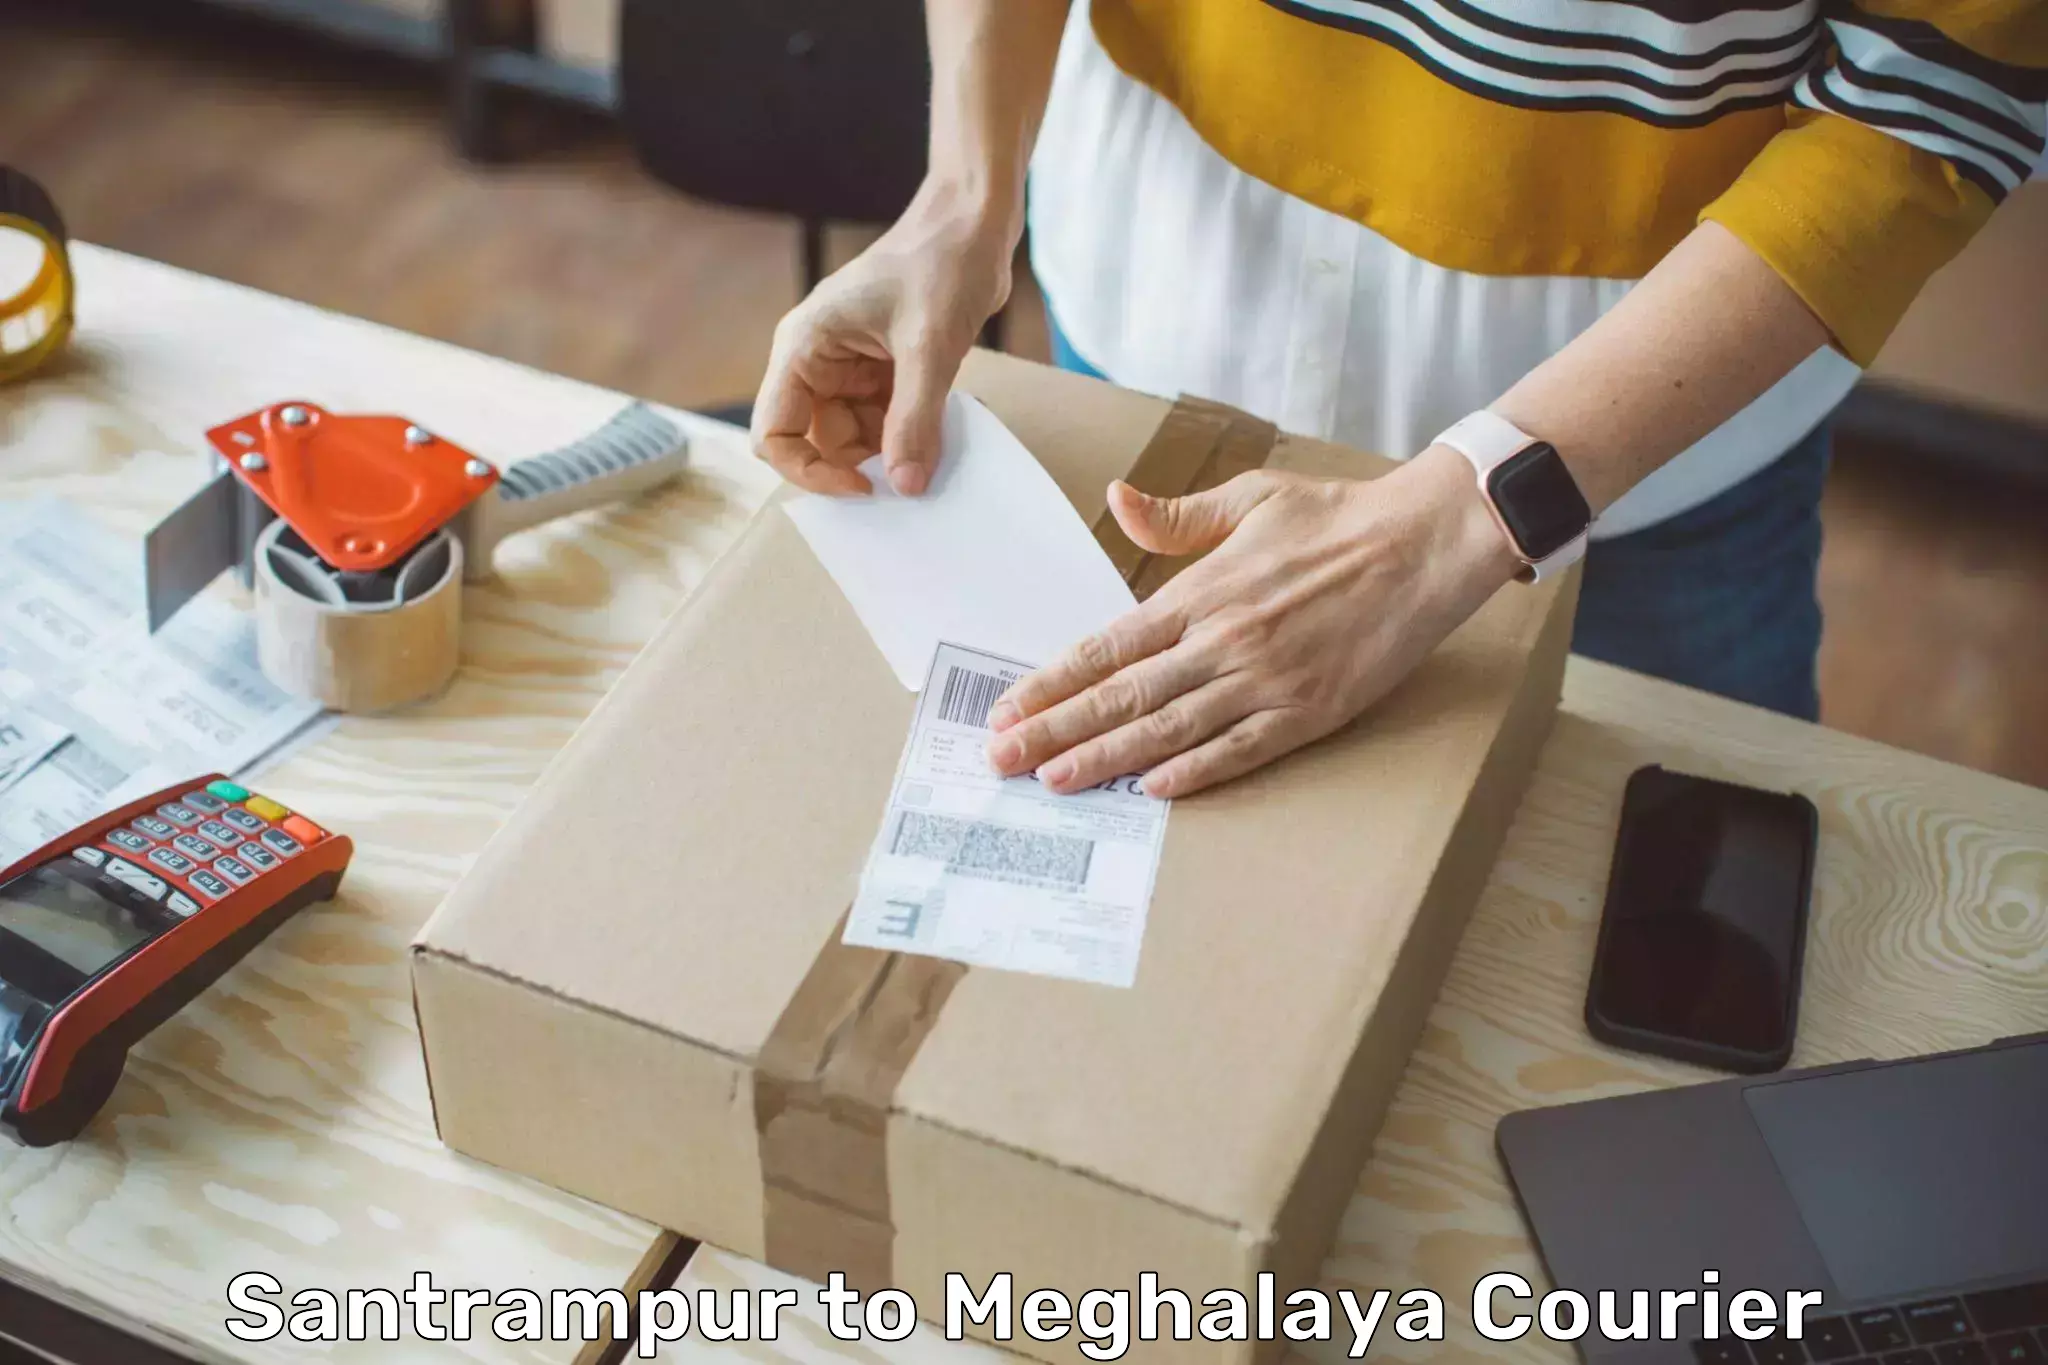 Global parcel delivery Santrampur to Meghalaya